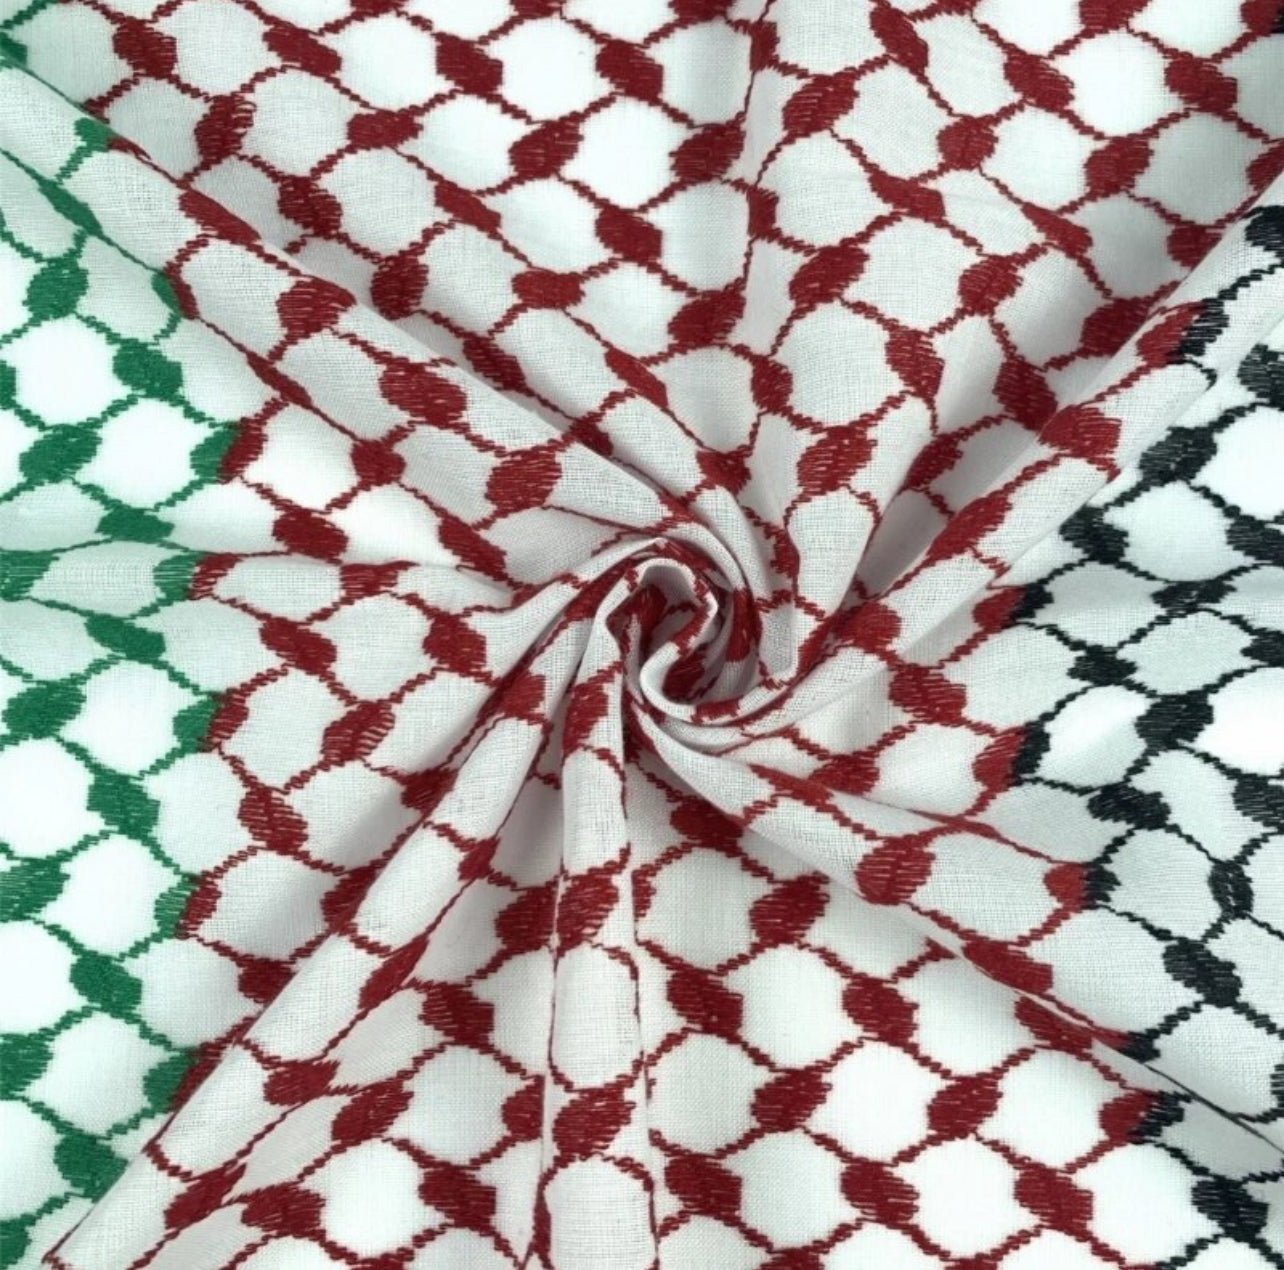 Palestine Shemagh Arab Keffiyeh Headscarf for Men & Women - www.DeeneeShop.com